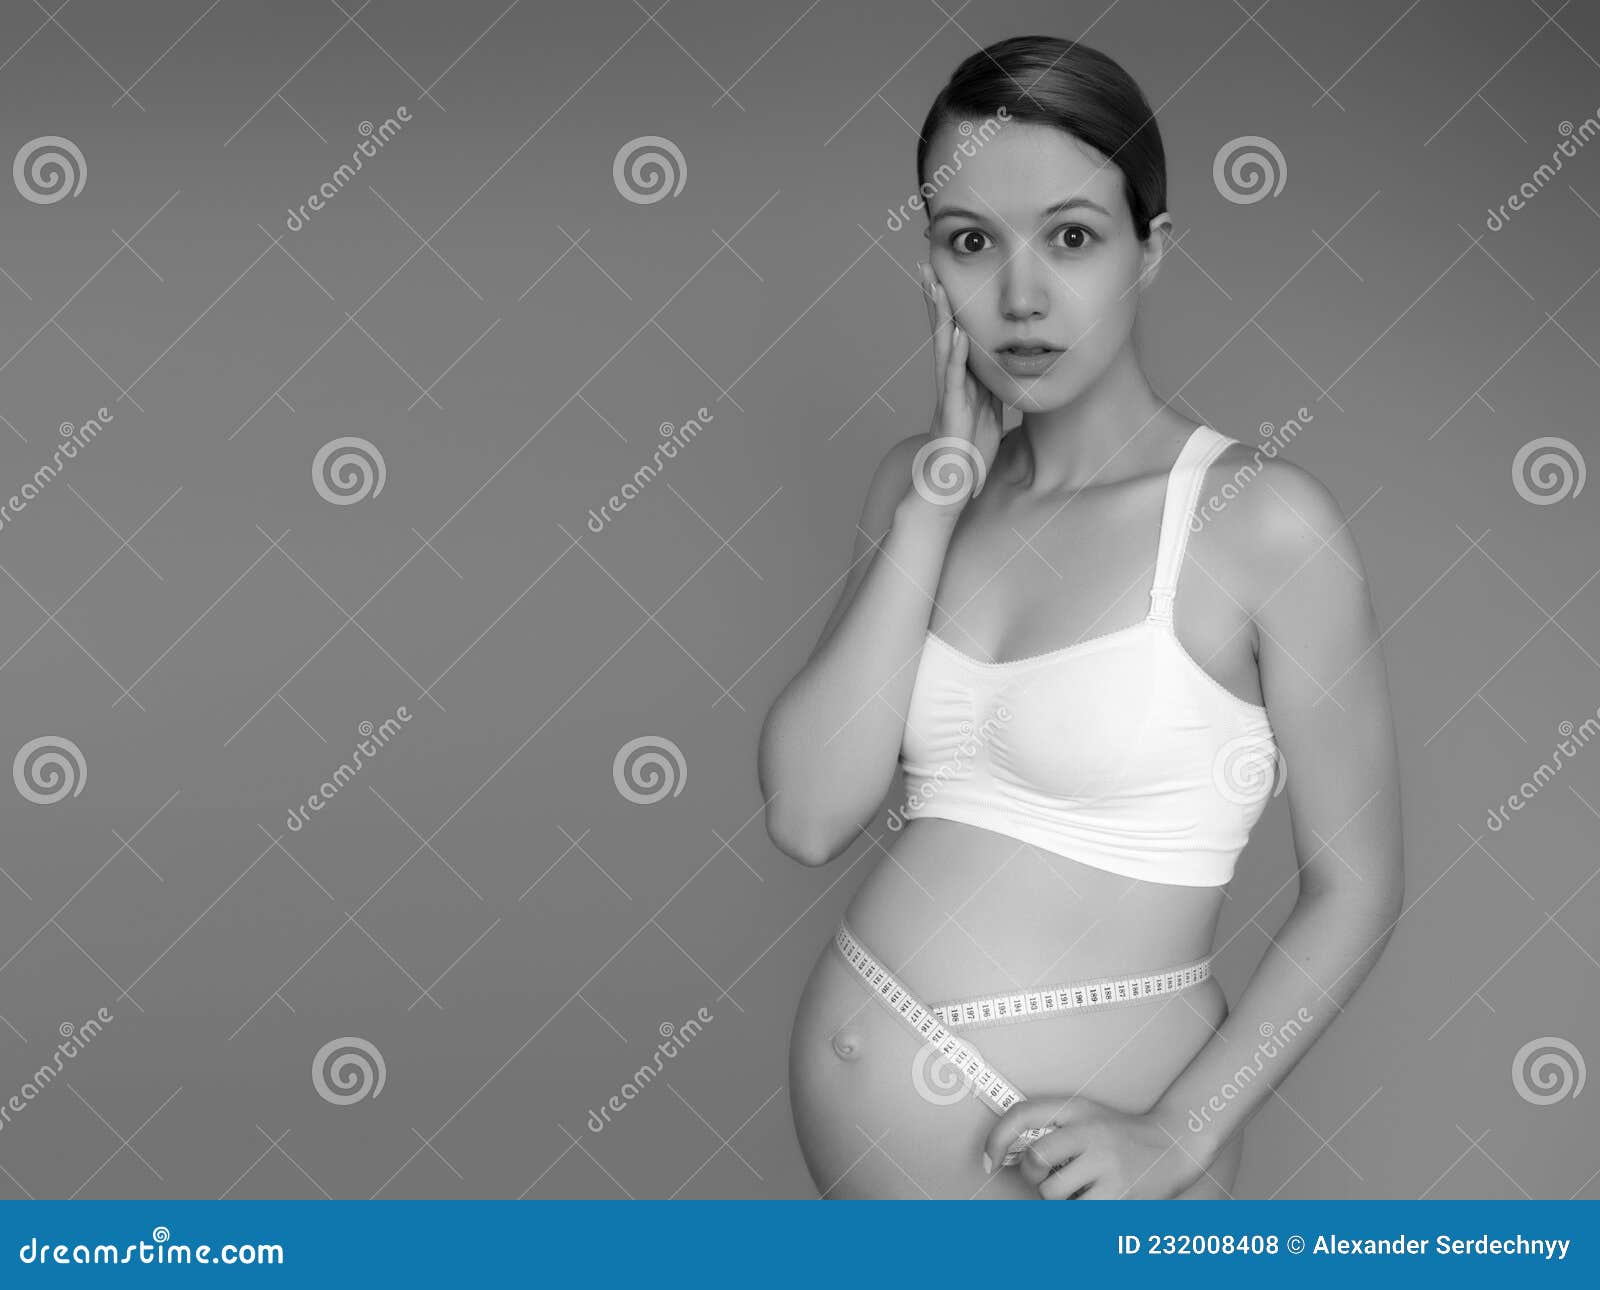 https://thumbs.dreamstime.com/z/bella-mujer-embarazada-vestida-de-ropa-para-mujeres-embarazadas-est%C3%A1-midiendo-su-barriga-desnuda-sonriendo-en-una-el-fondo-imagen-232008408.jpg